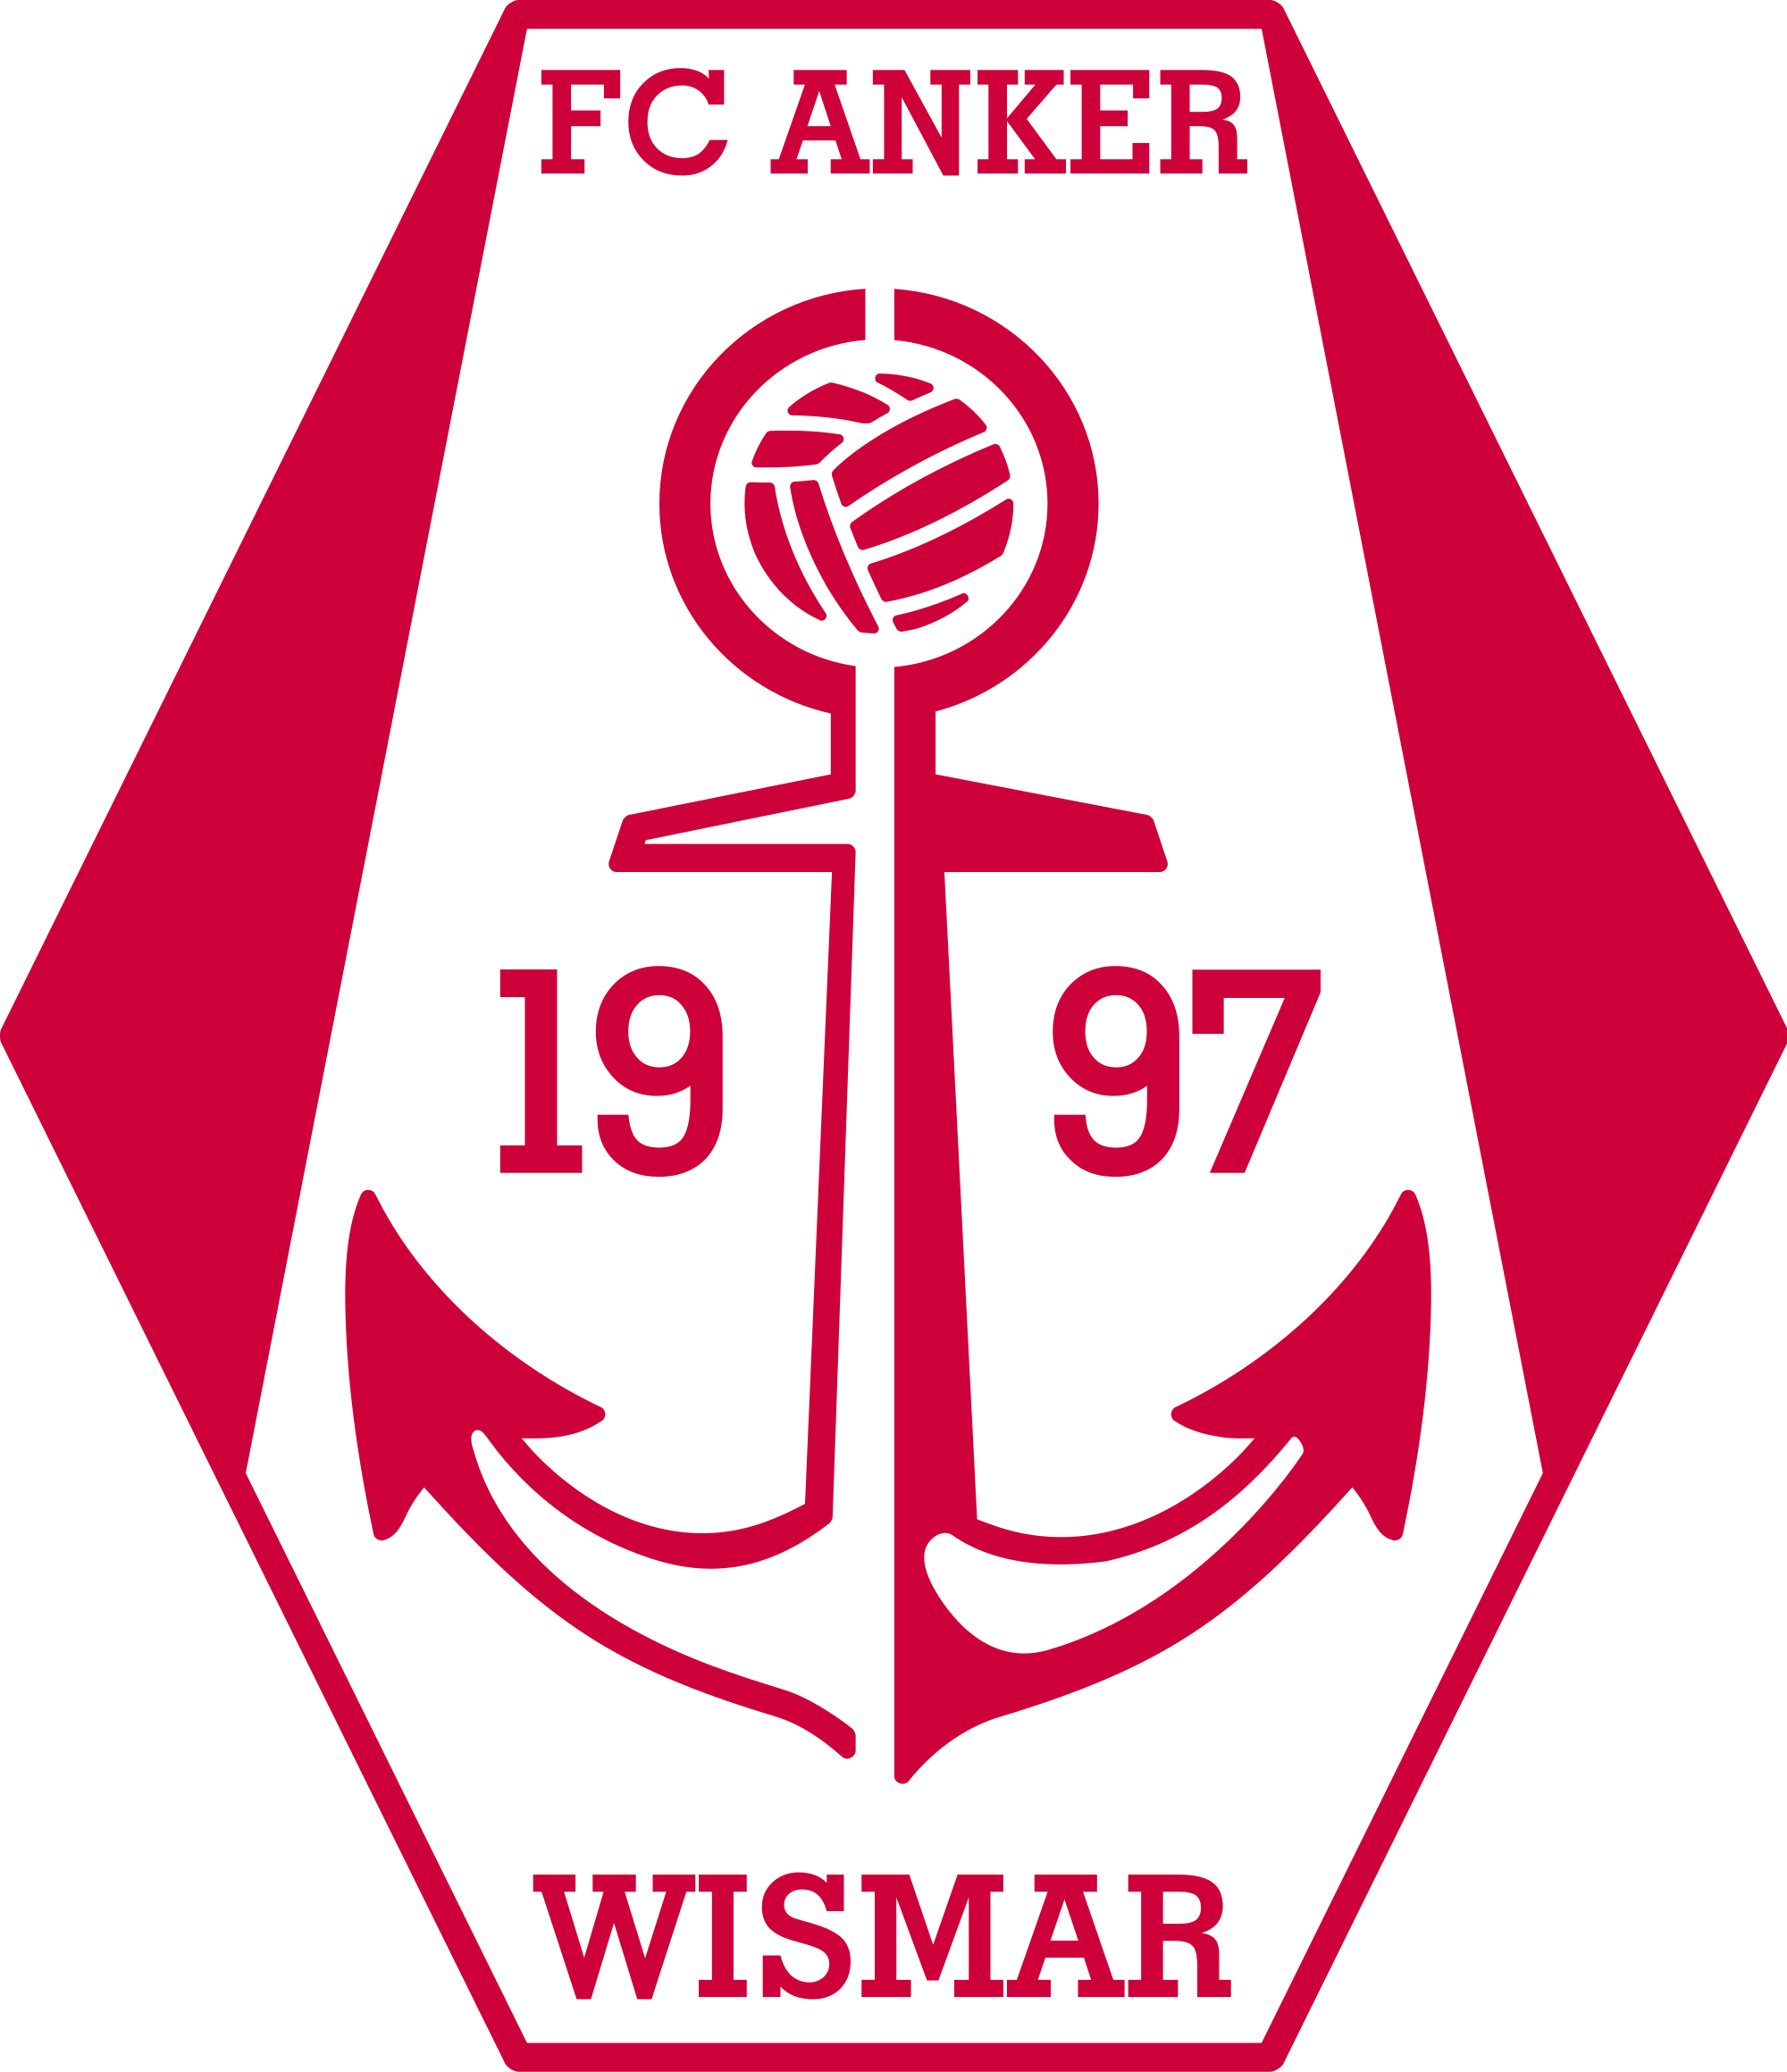 Anker Wismar logo